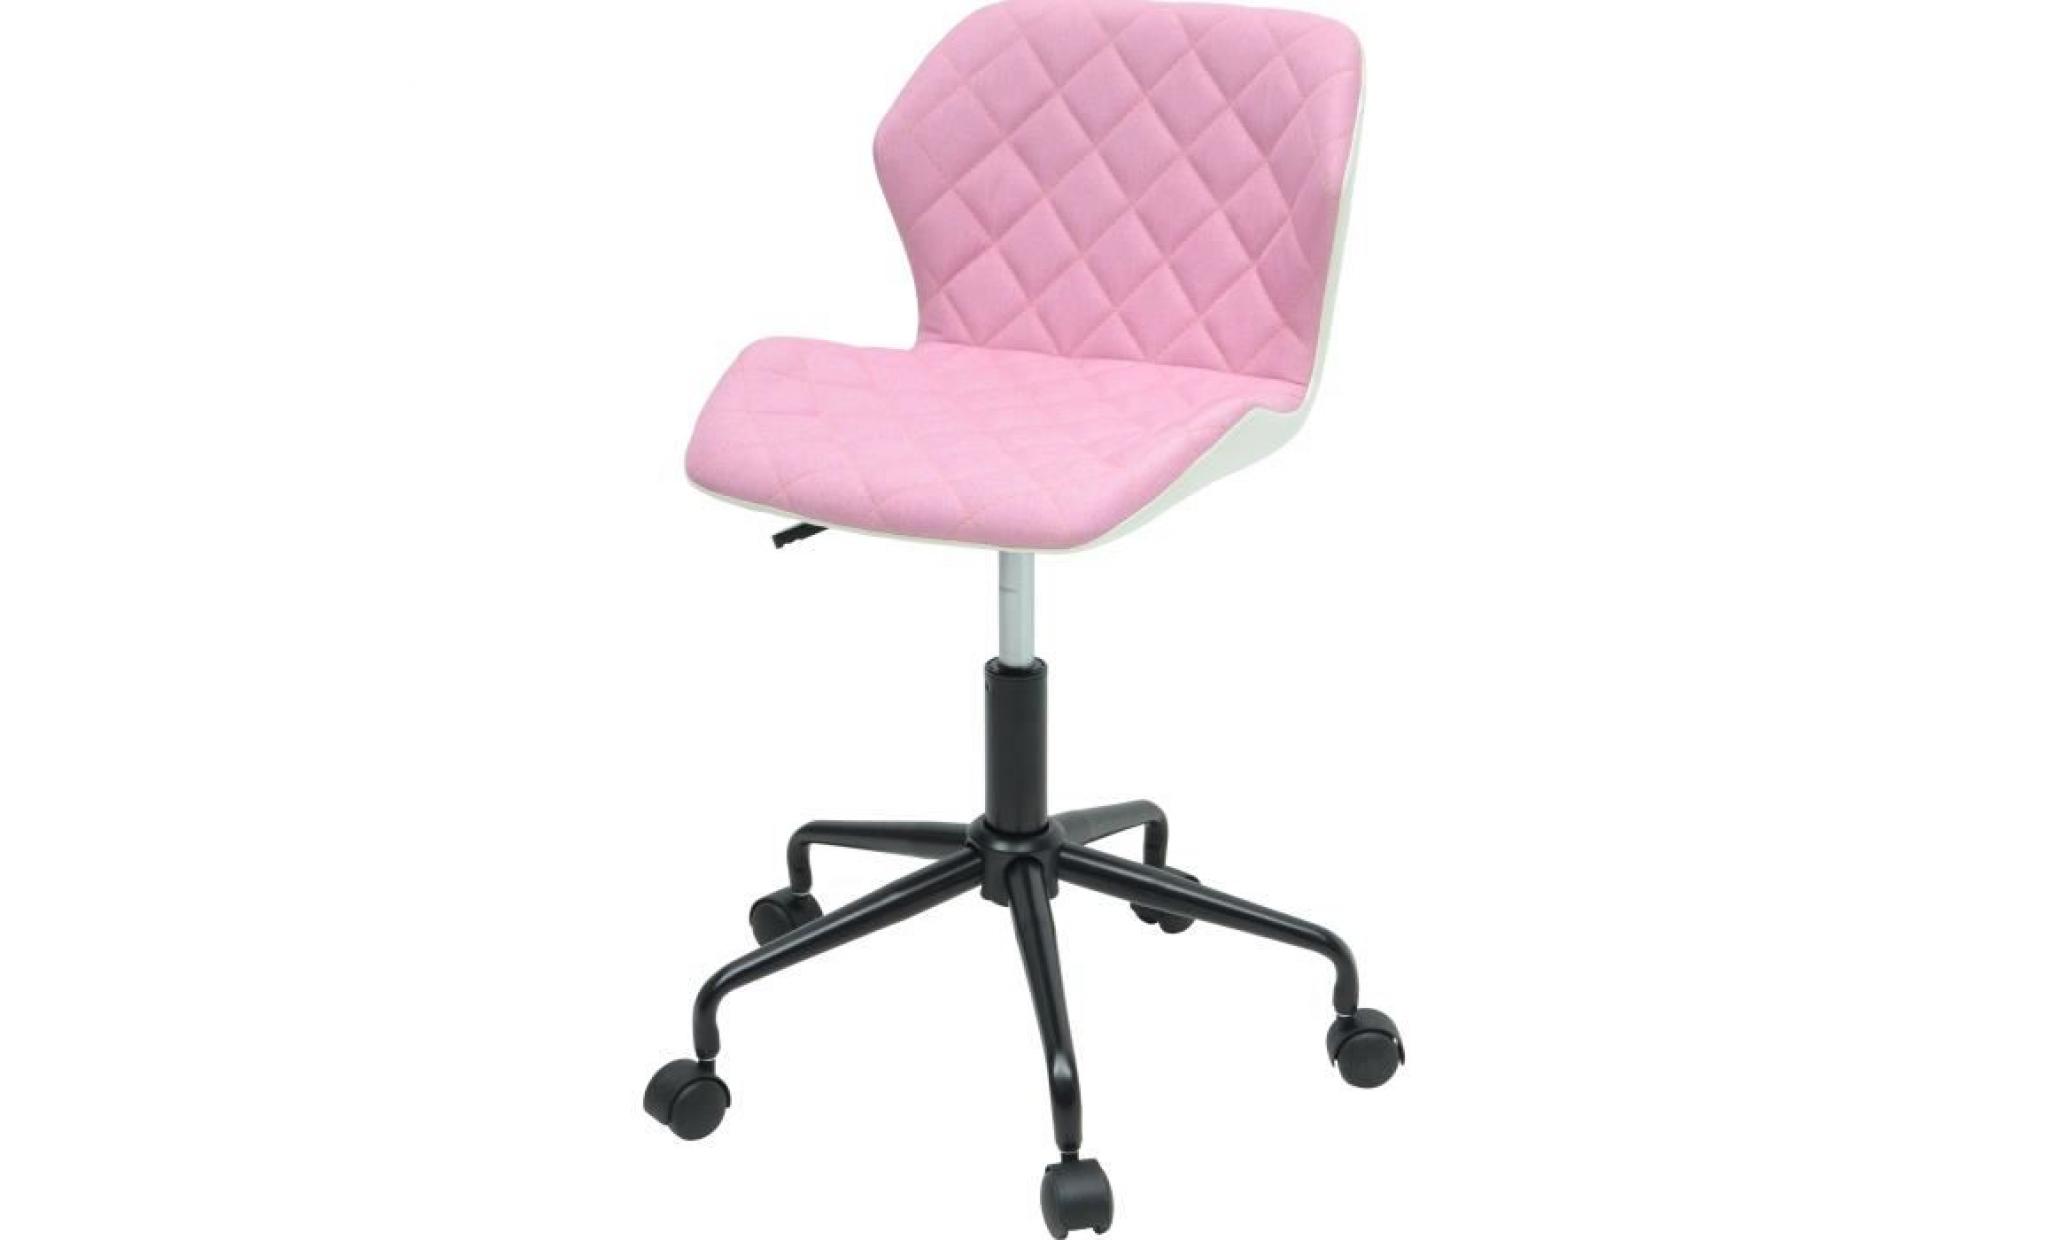 squate chaise de bureau   tissu et simili   rose pâle   style industriel   l 42 x p 35 cm